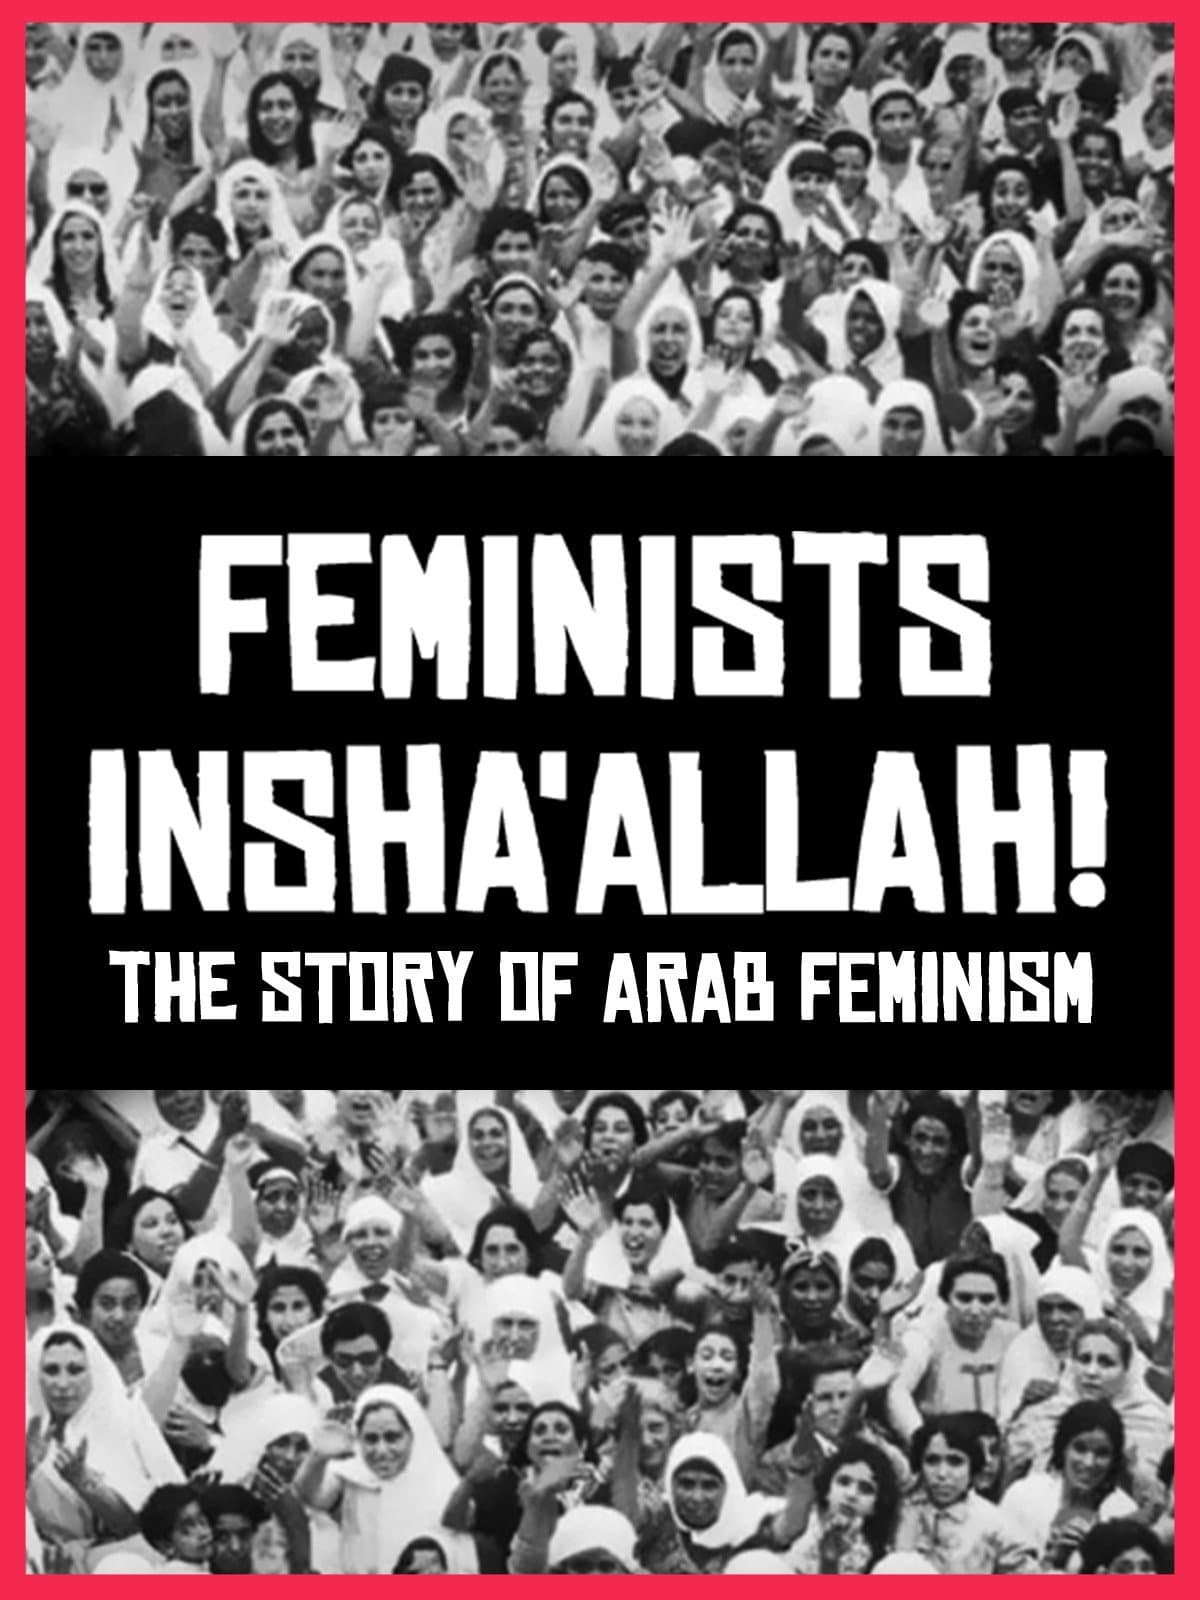 Feminists Insha'allah! The Story of Arab Feminism